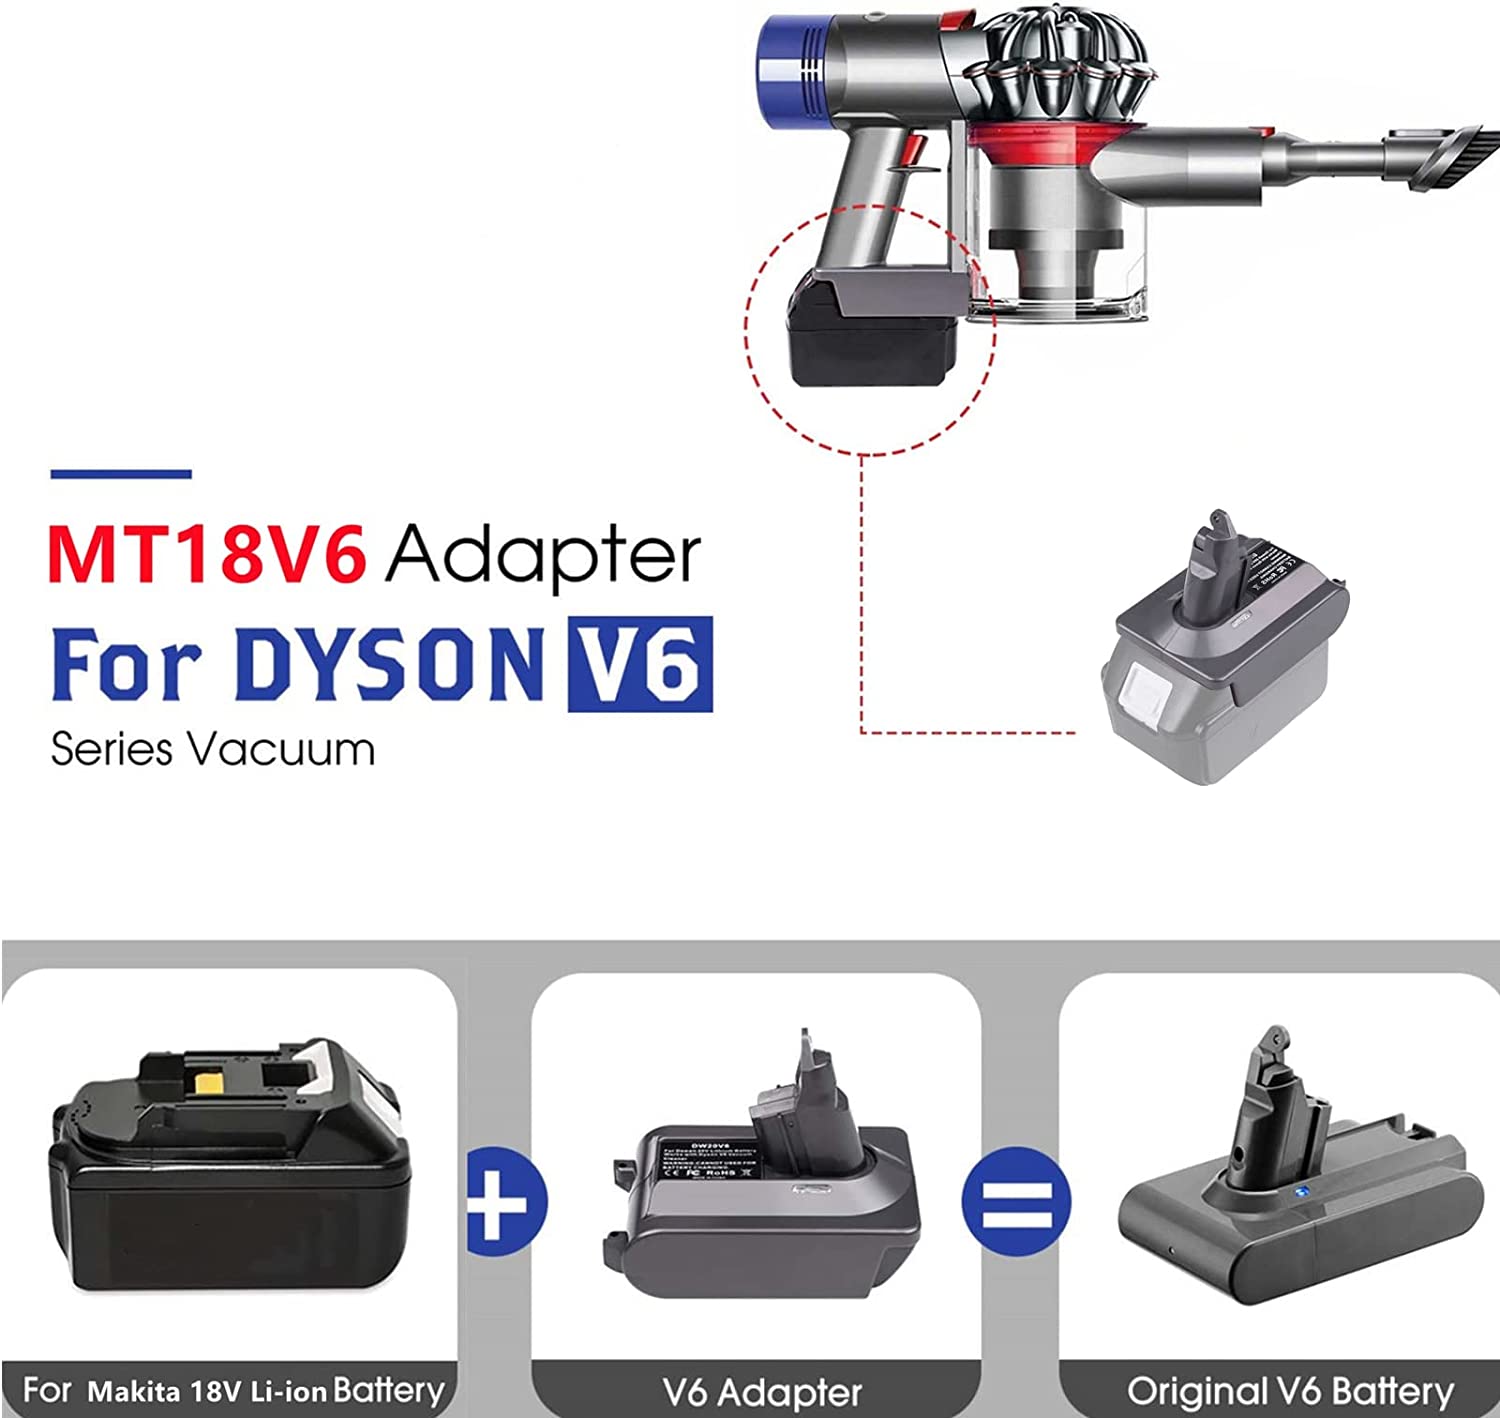 Adattatore di Batteria Dyson V6 per Batteria di Lithium Makita 18V Cunvertita in Batteria Dyson V6